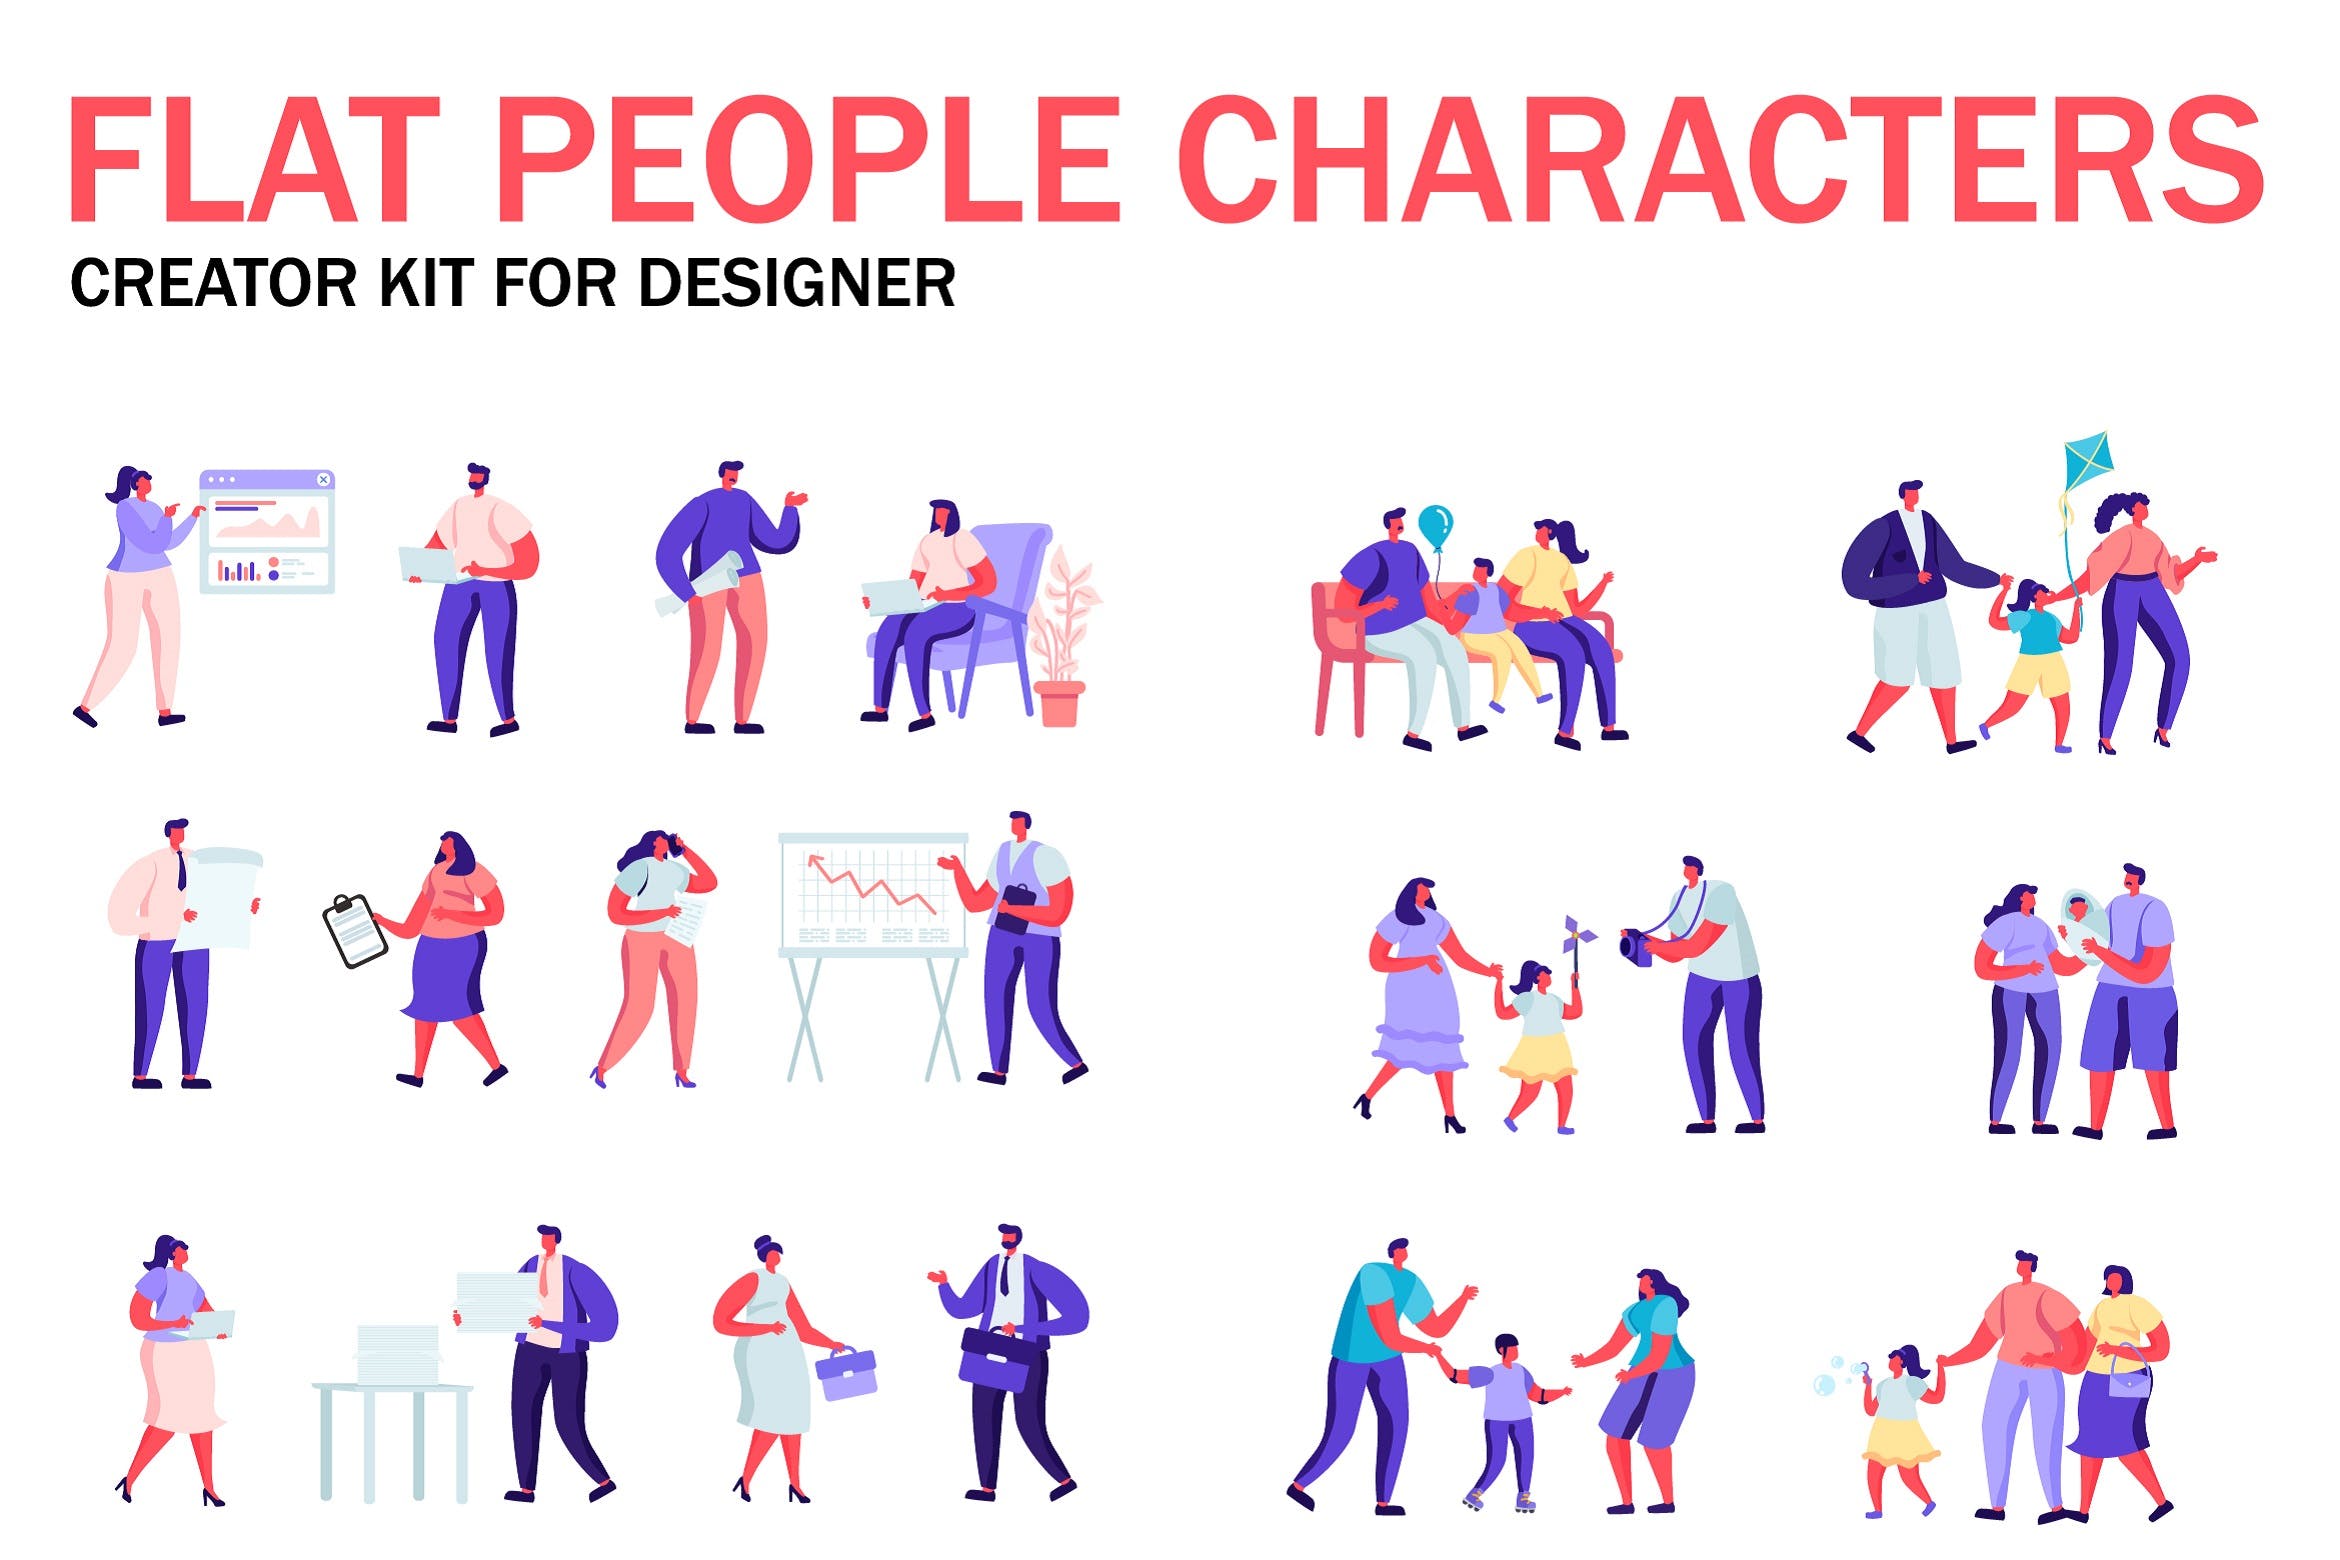 扁平化设计风格虚拟人物角色图形设计工具包v4 Flat People Character Creator Kit插图